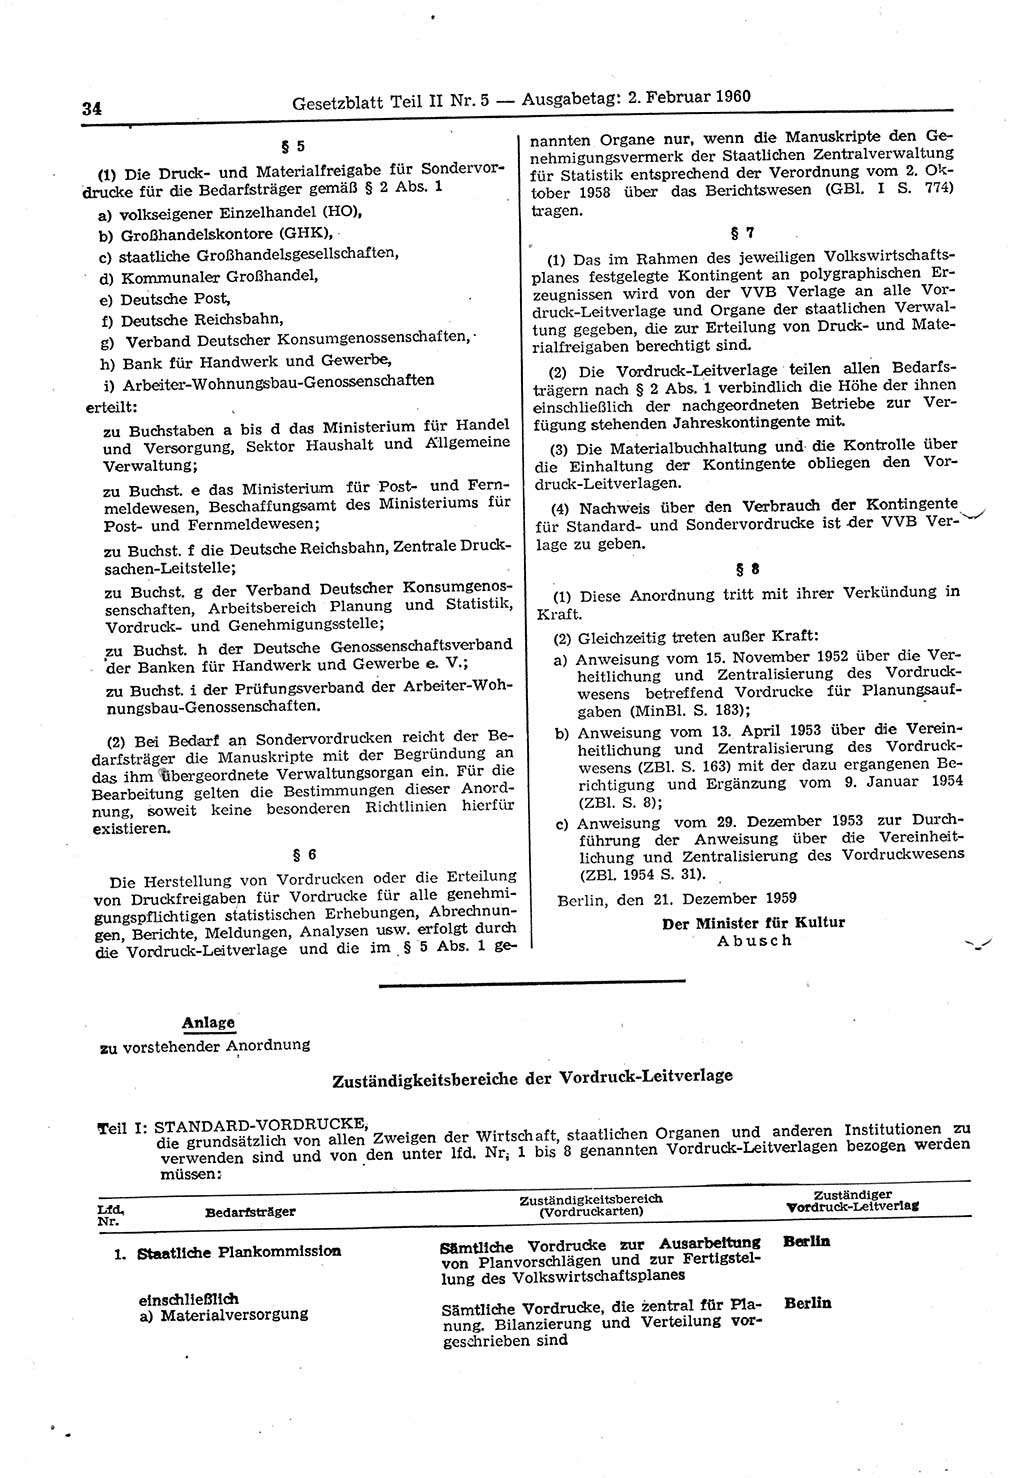 Gesetzblatt (GBl.) der Deutschen Demokratischen Republik (DDR) Teil ⅠⅠ 1960, Seite 34 (GBl. DDR ⅠⅠ 1960, S. 34)